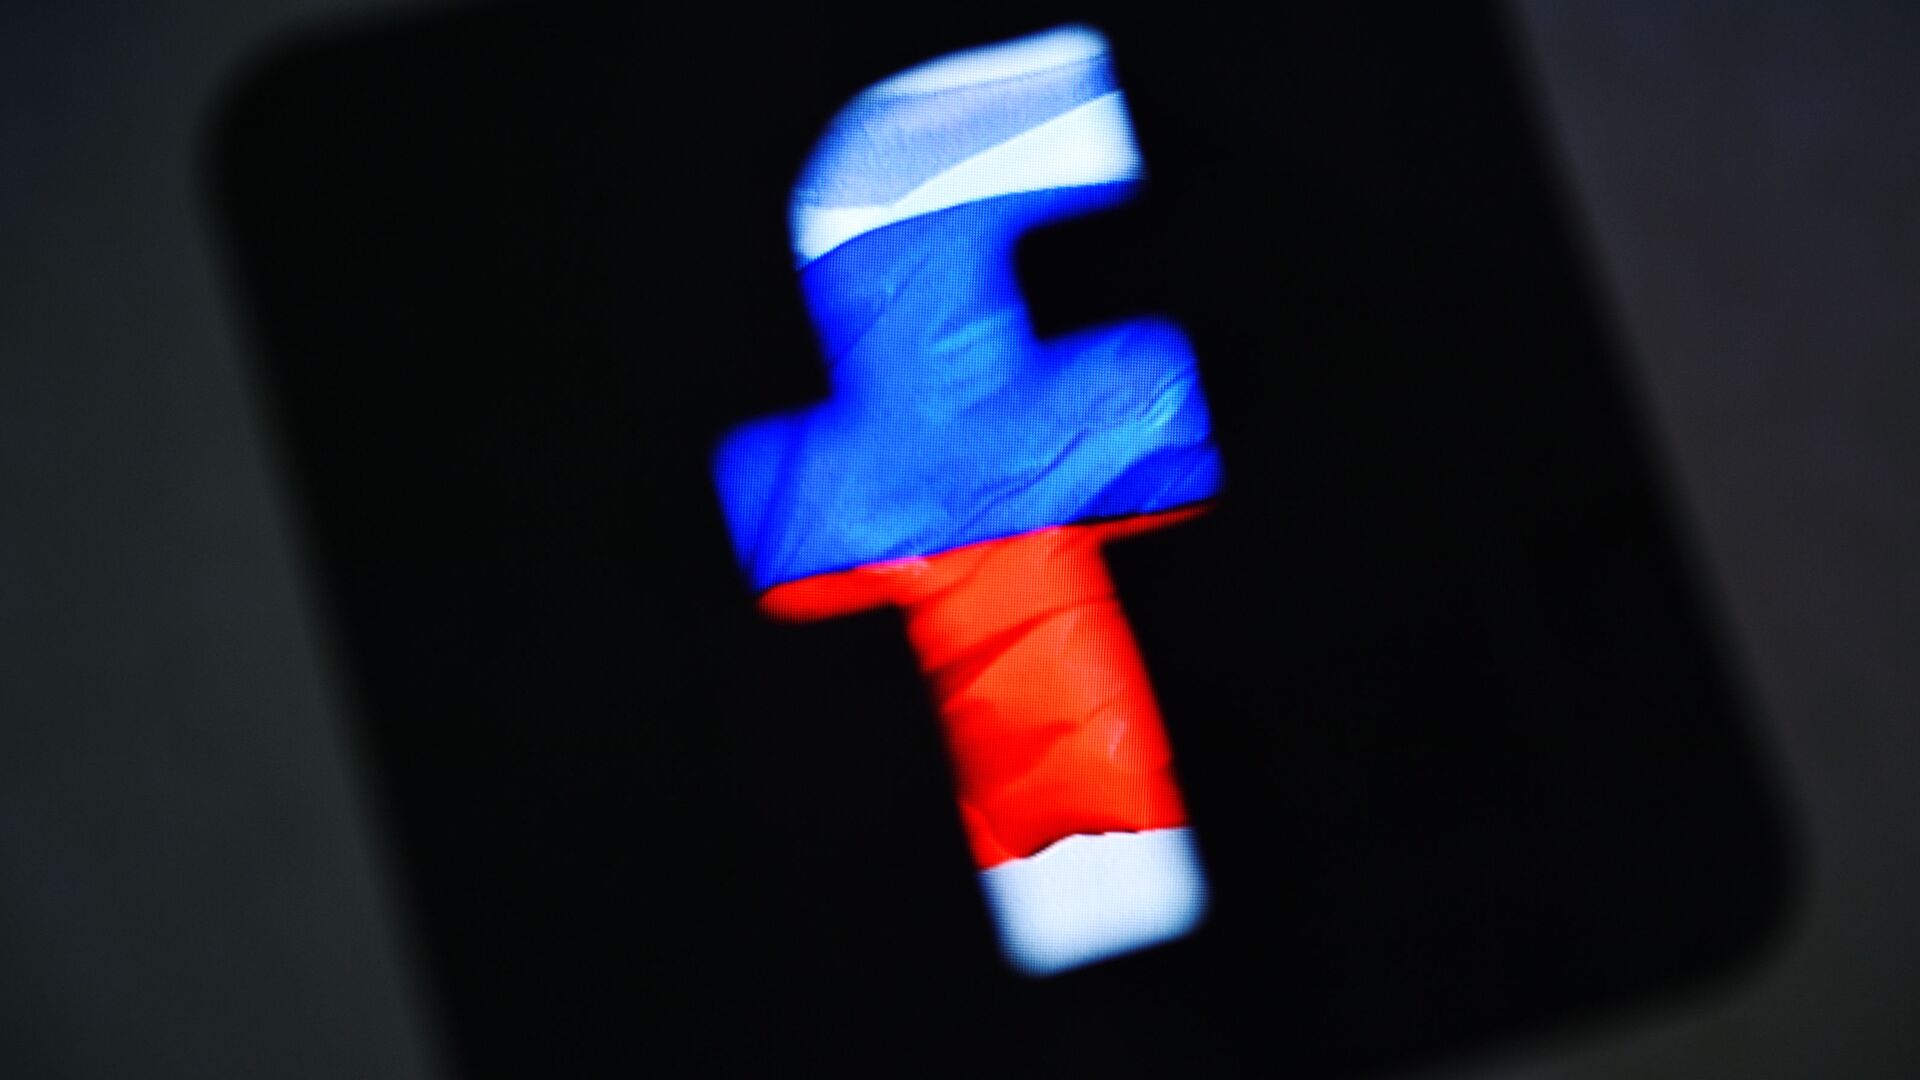 Лого друштвене мреже Фејсбук у бојама руске заставе - Sputnik Србија, 1920, 24.05.2021